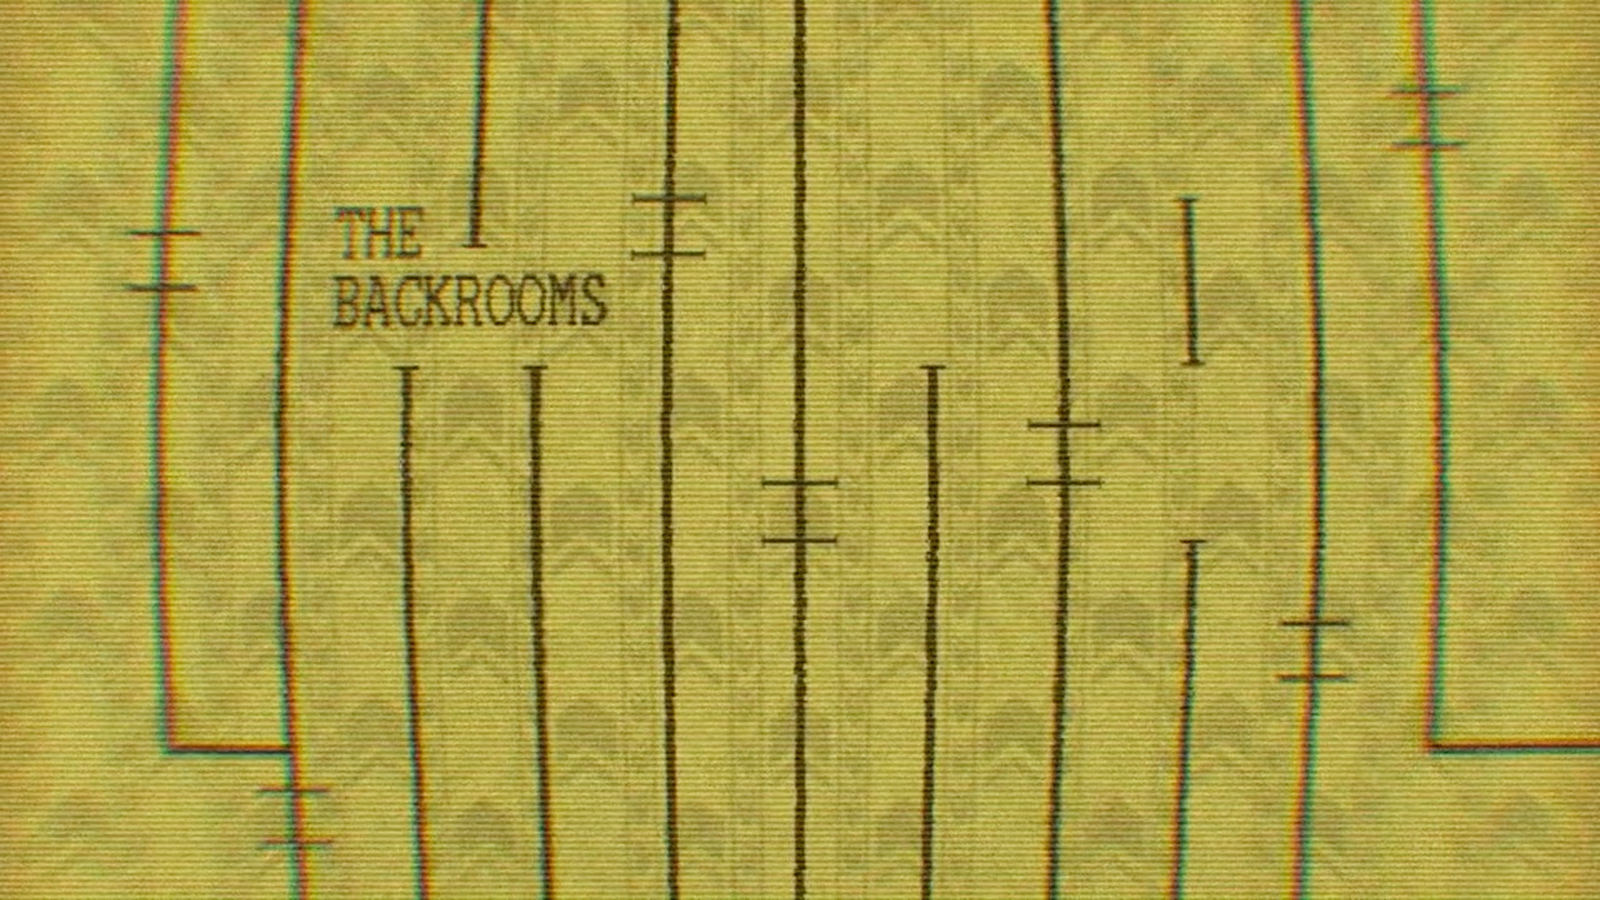 Escape The Backrooms - Play Escape The Backrooms On Among Us